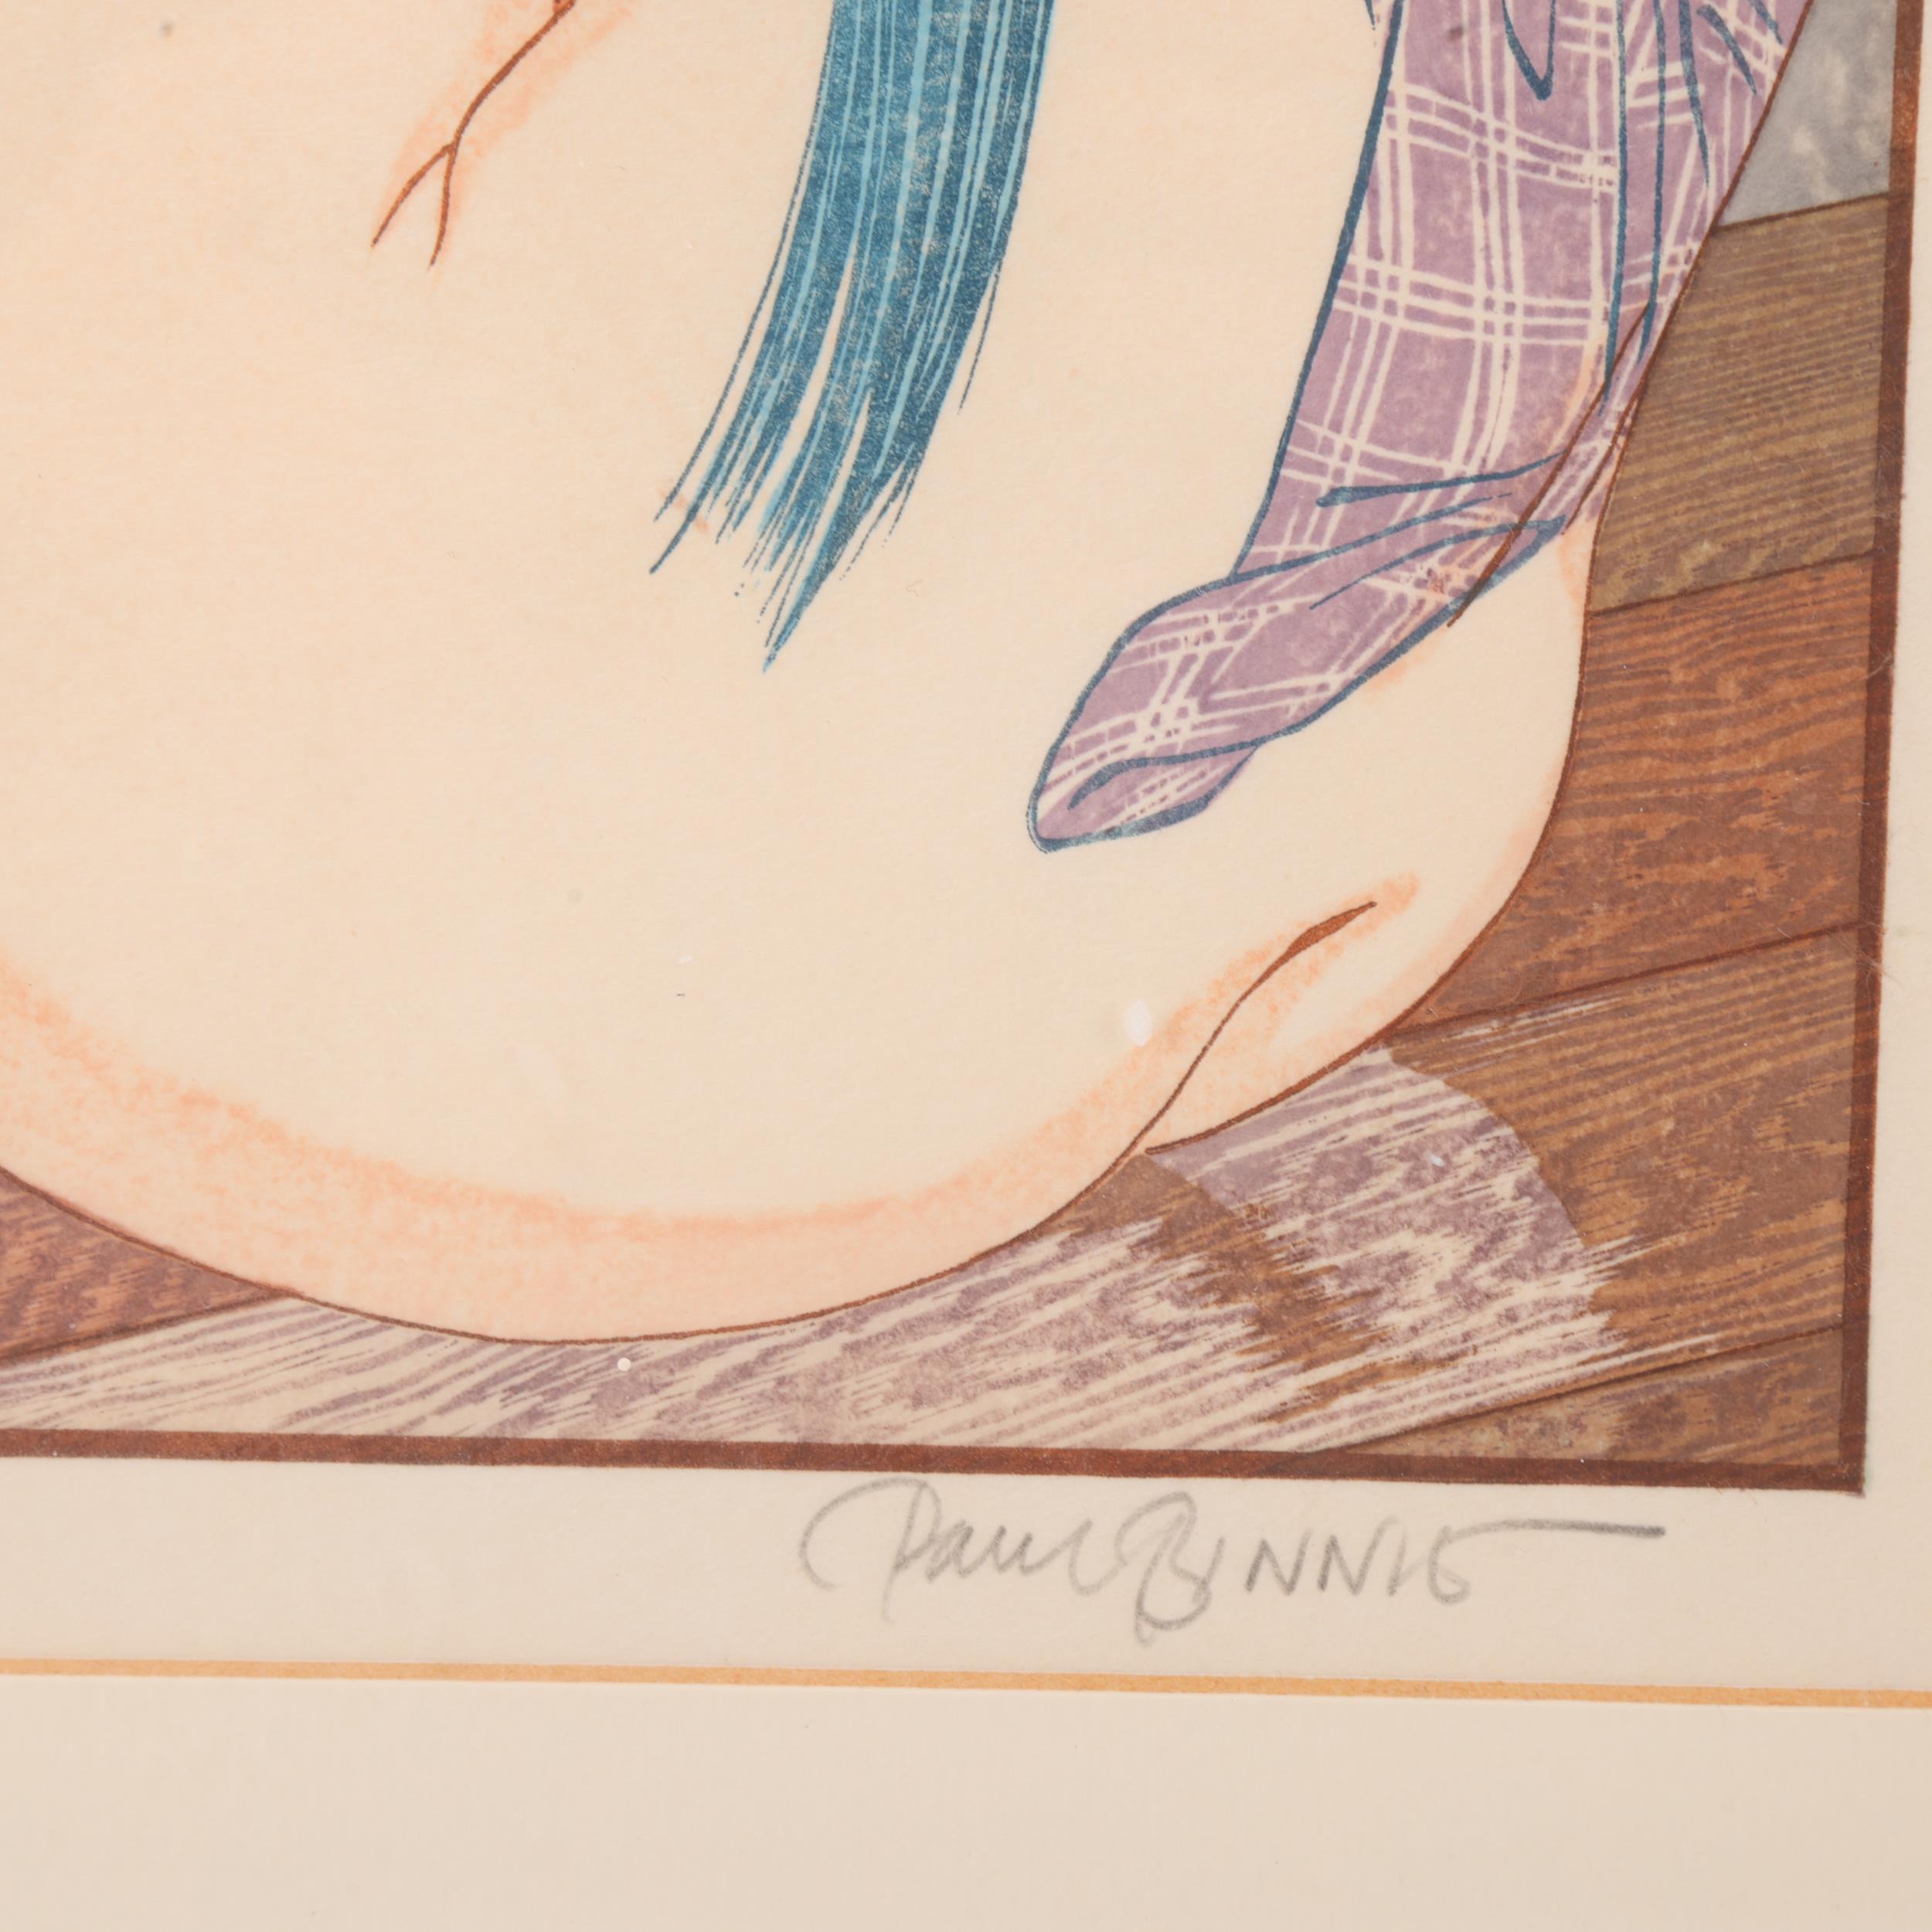 Paul Binnie (born 1967), Utamarono Shunga - Erotica by Utamaro, hand colour woodblock print from - Image 3 of 3